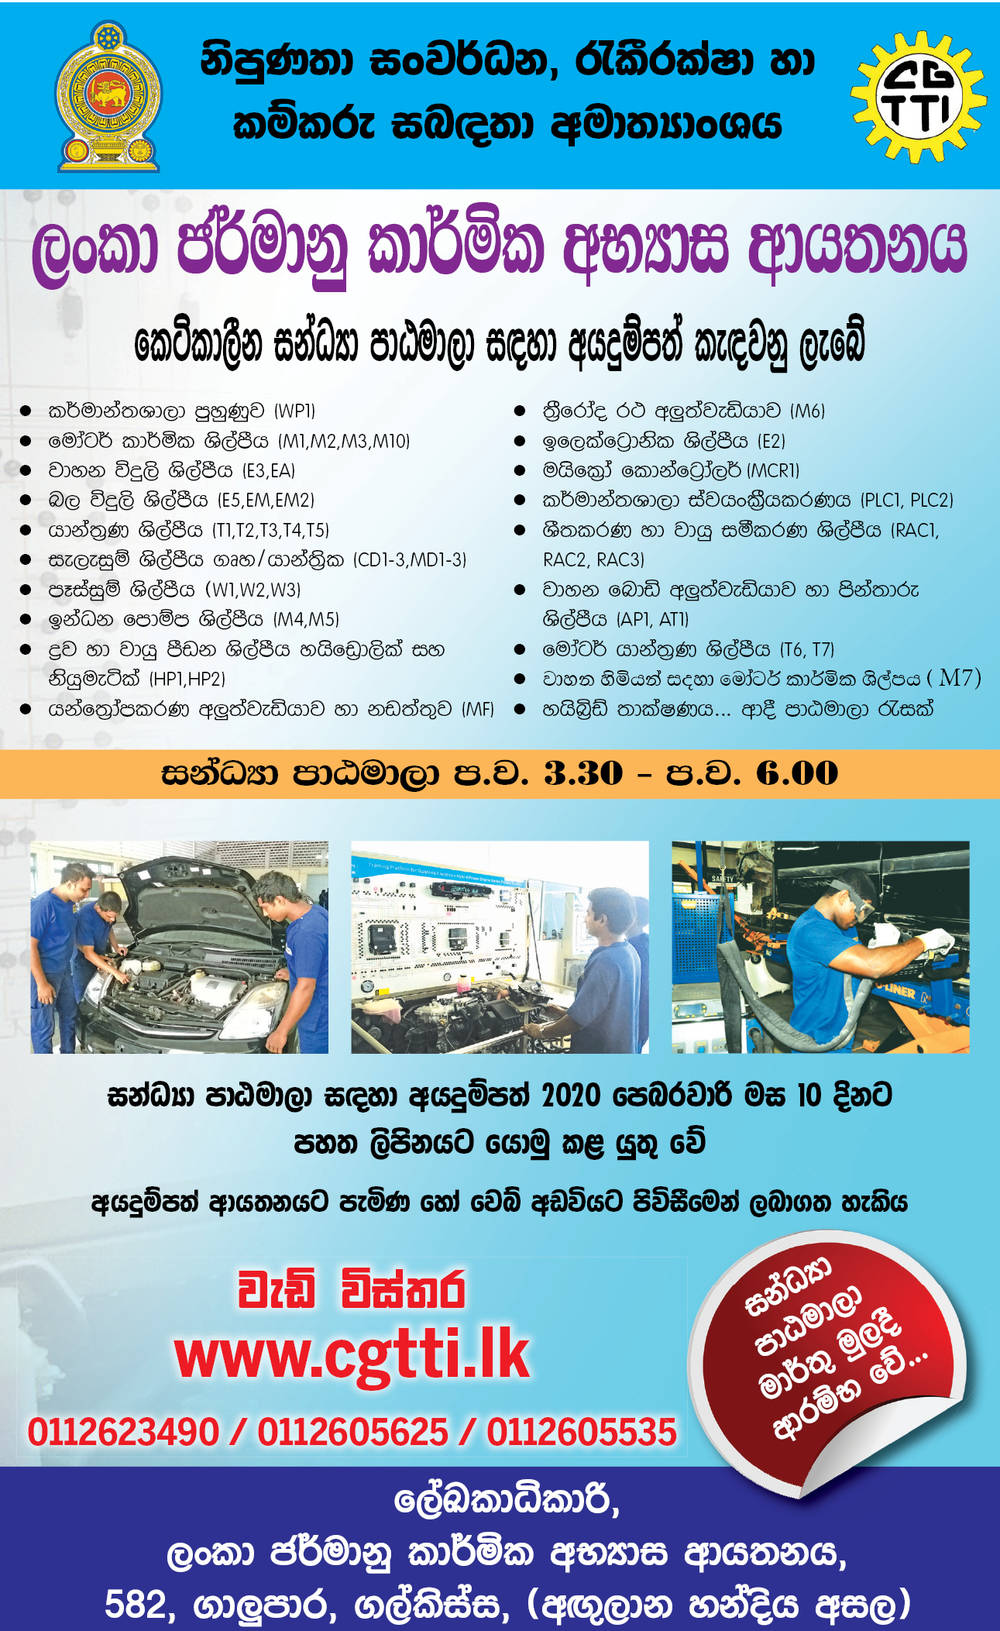 Short Evening Courses - Ceylon German Technical Training Institute